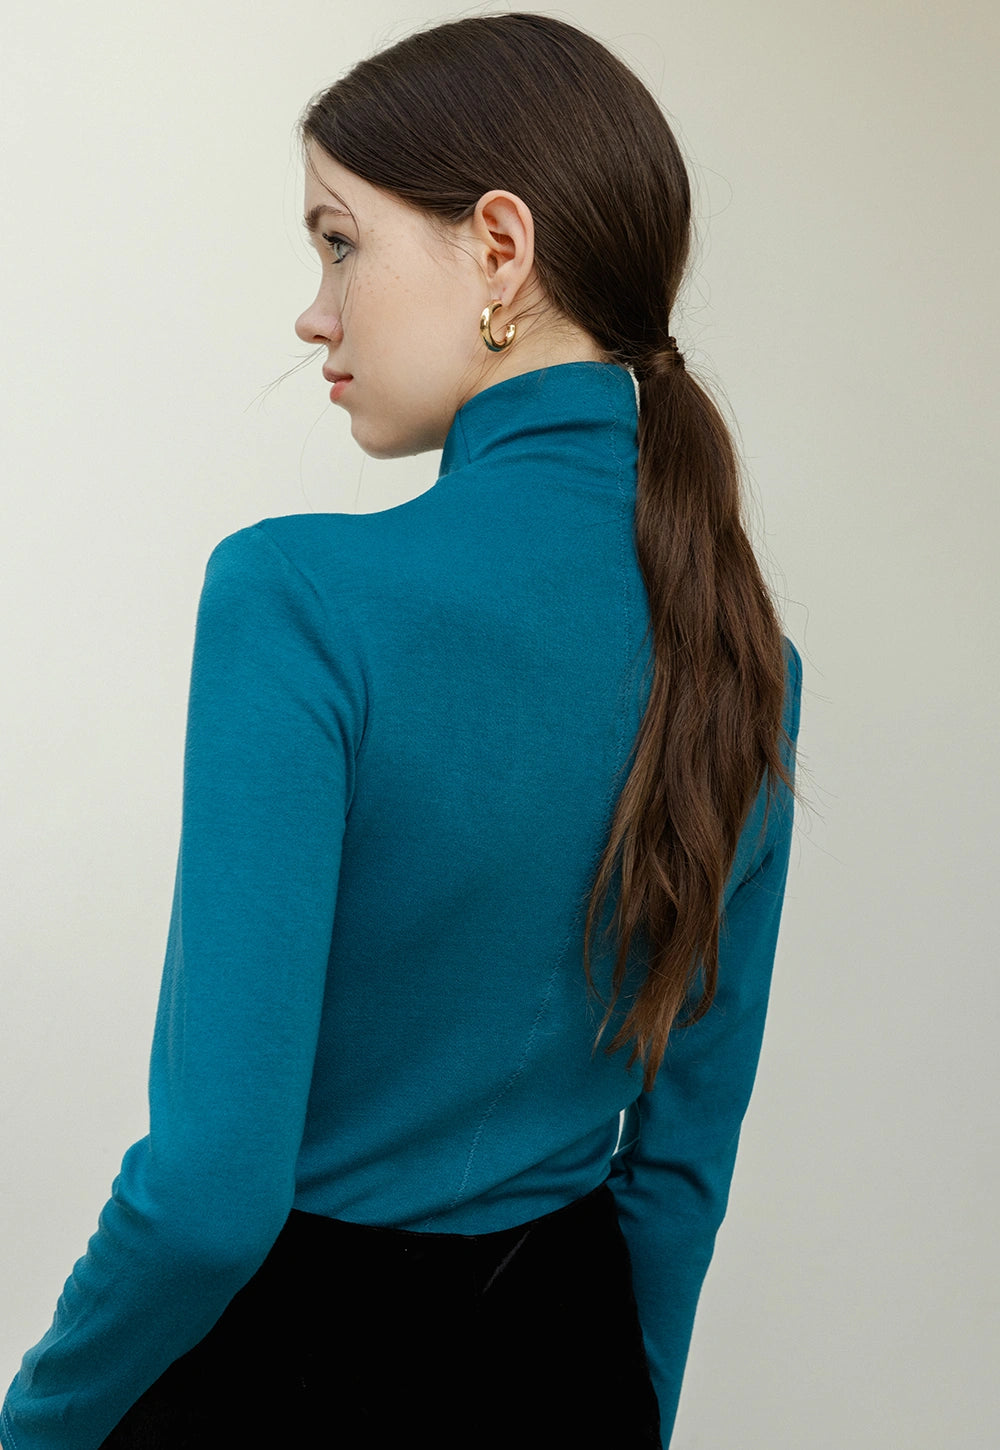 Women's Long Sleeve Turtleneck Knit Top